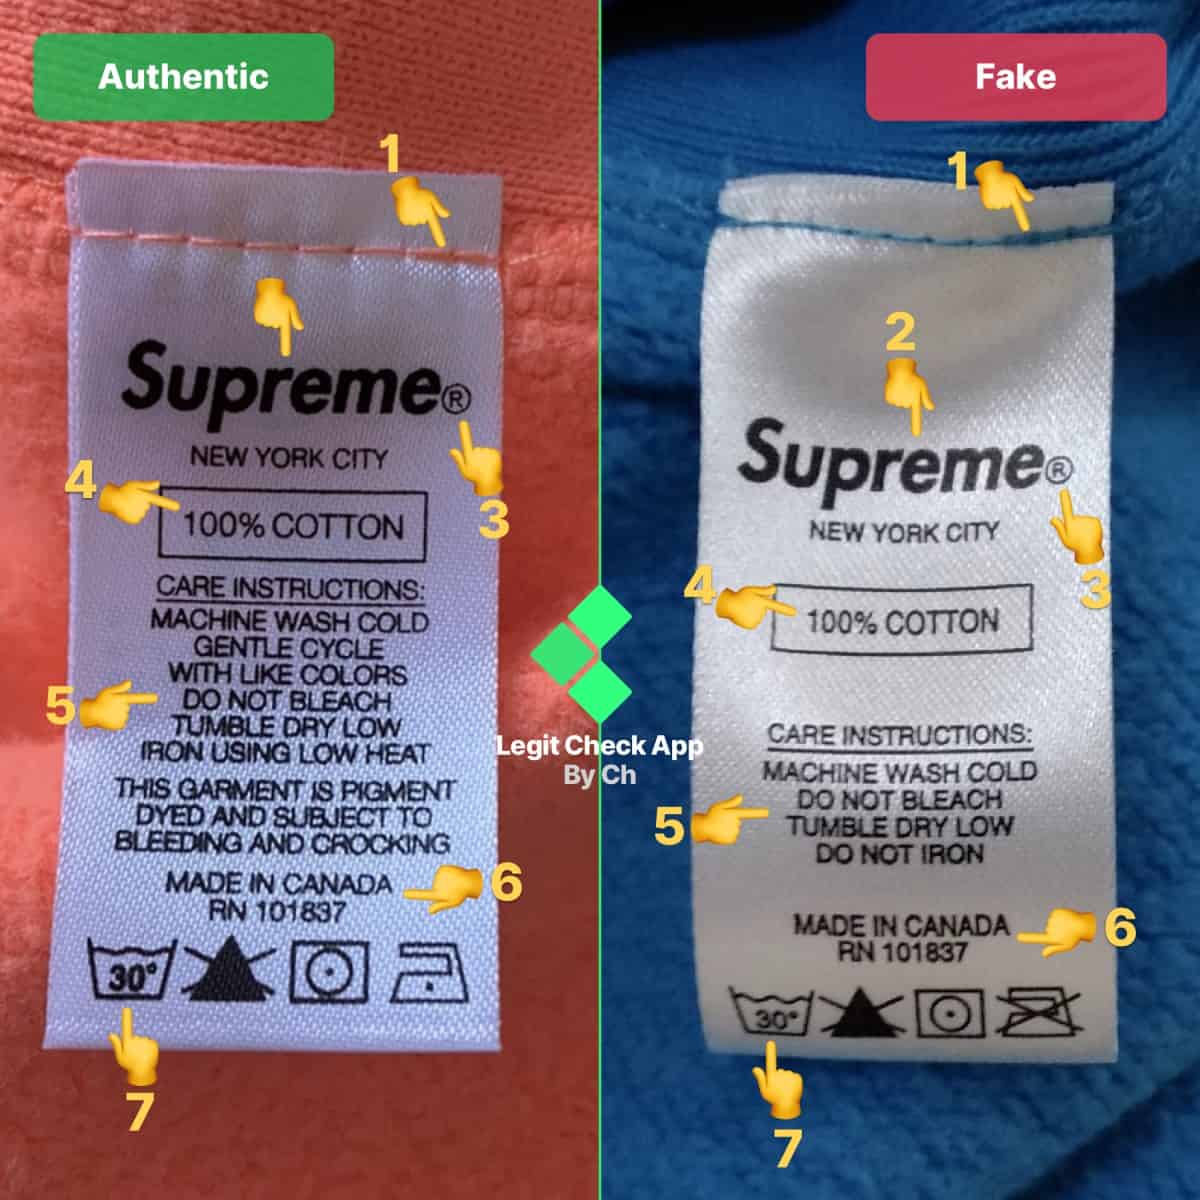 supreme crewneck fake vs real